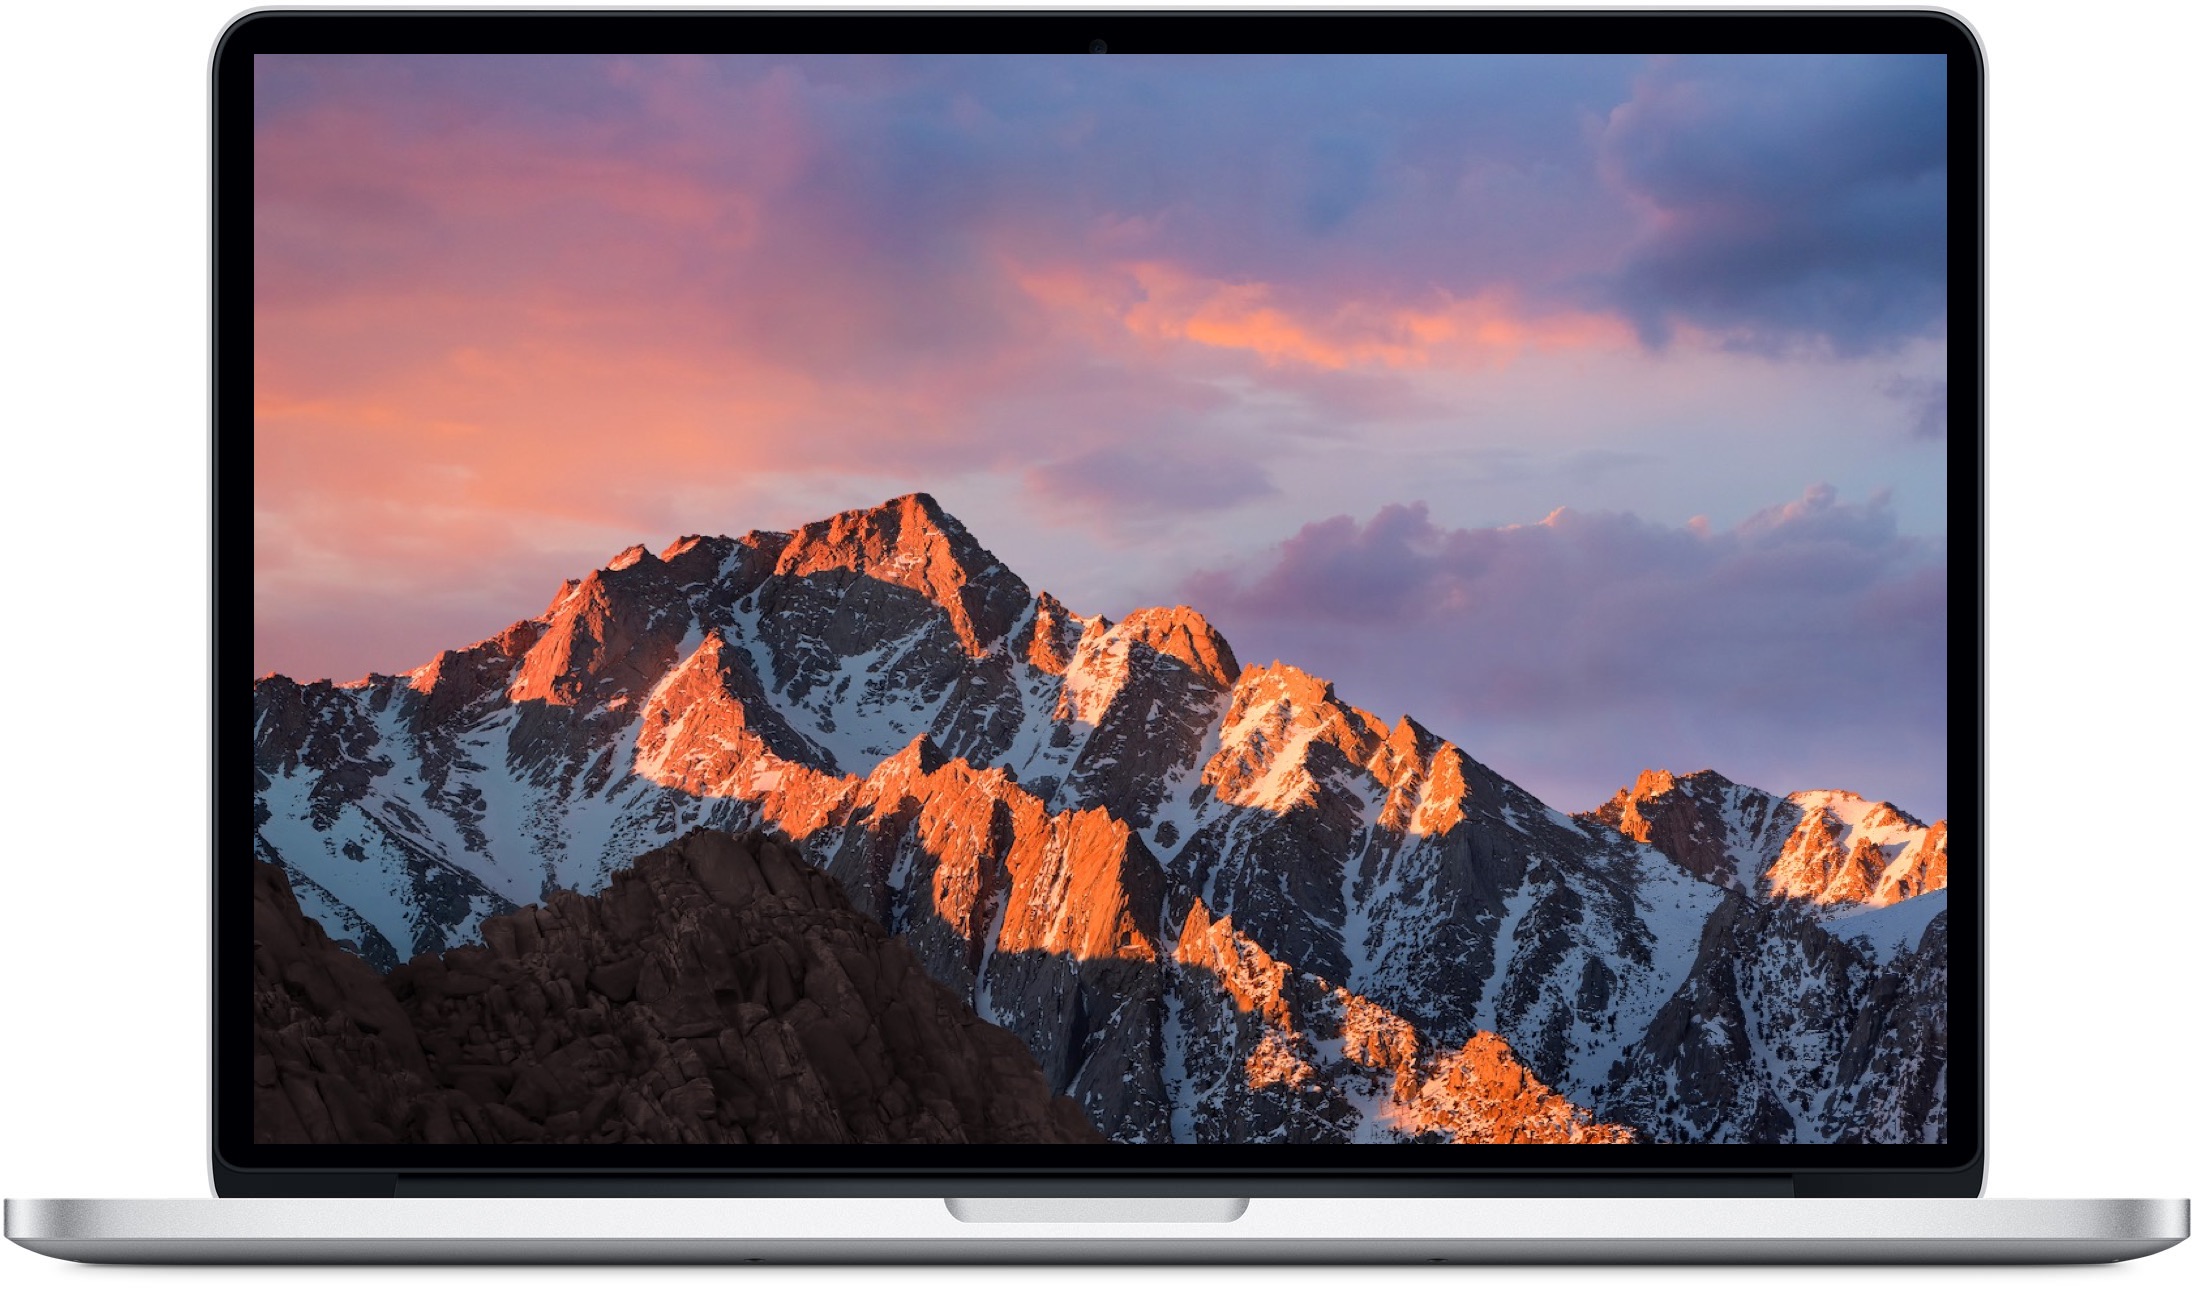 Mac Sierra , HD Wallpaper & Backgrounds